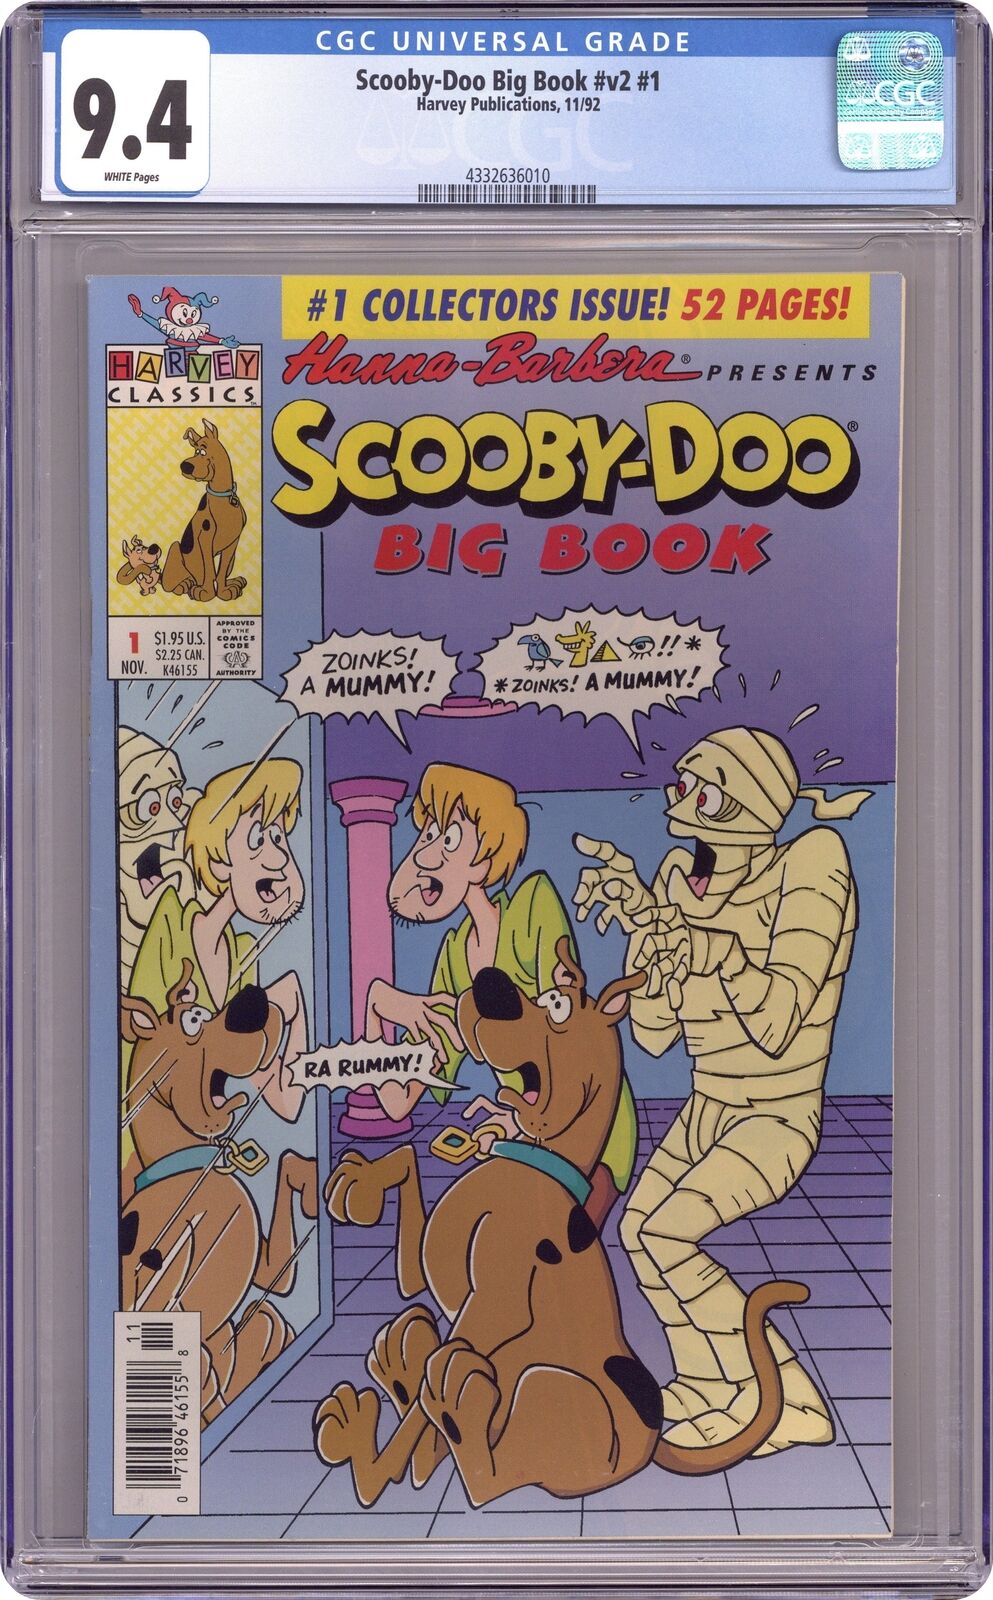 Scooby-Doo Big Book #1 CGC 9.4 1992 4332636010